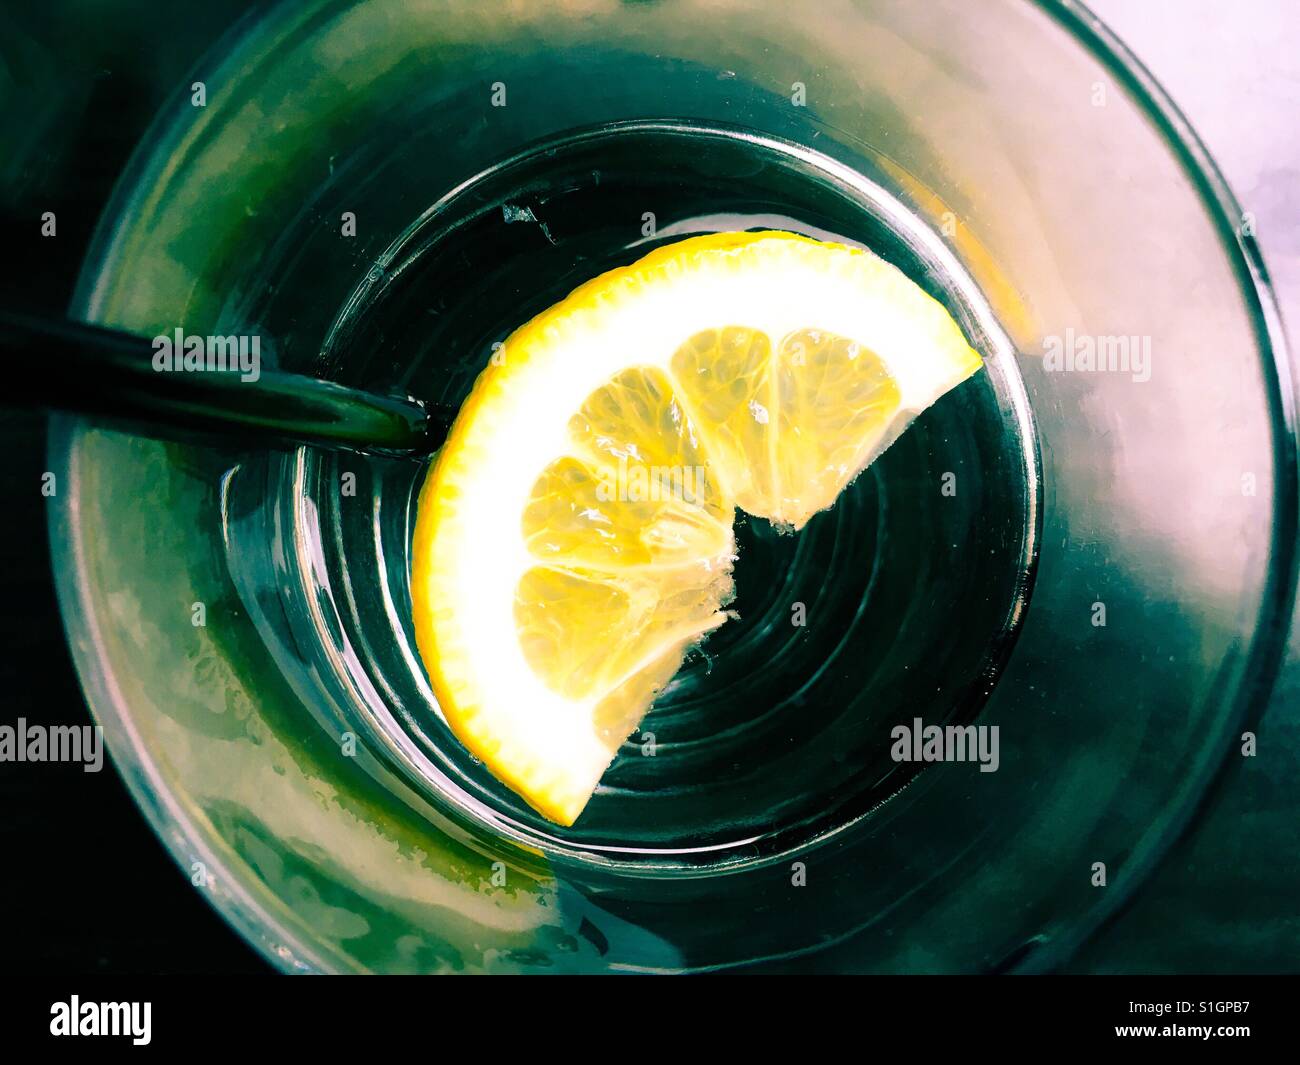 Flotando en el vaso de agua de limón Foto de stock